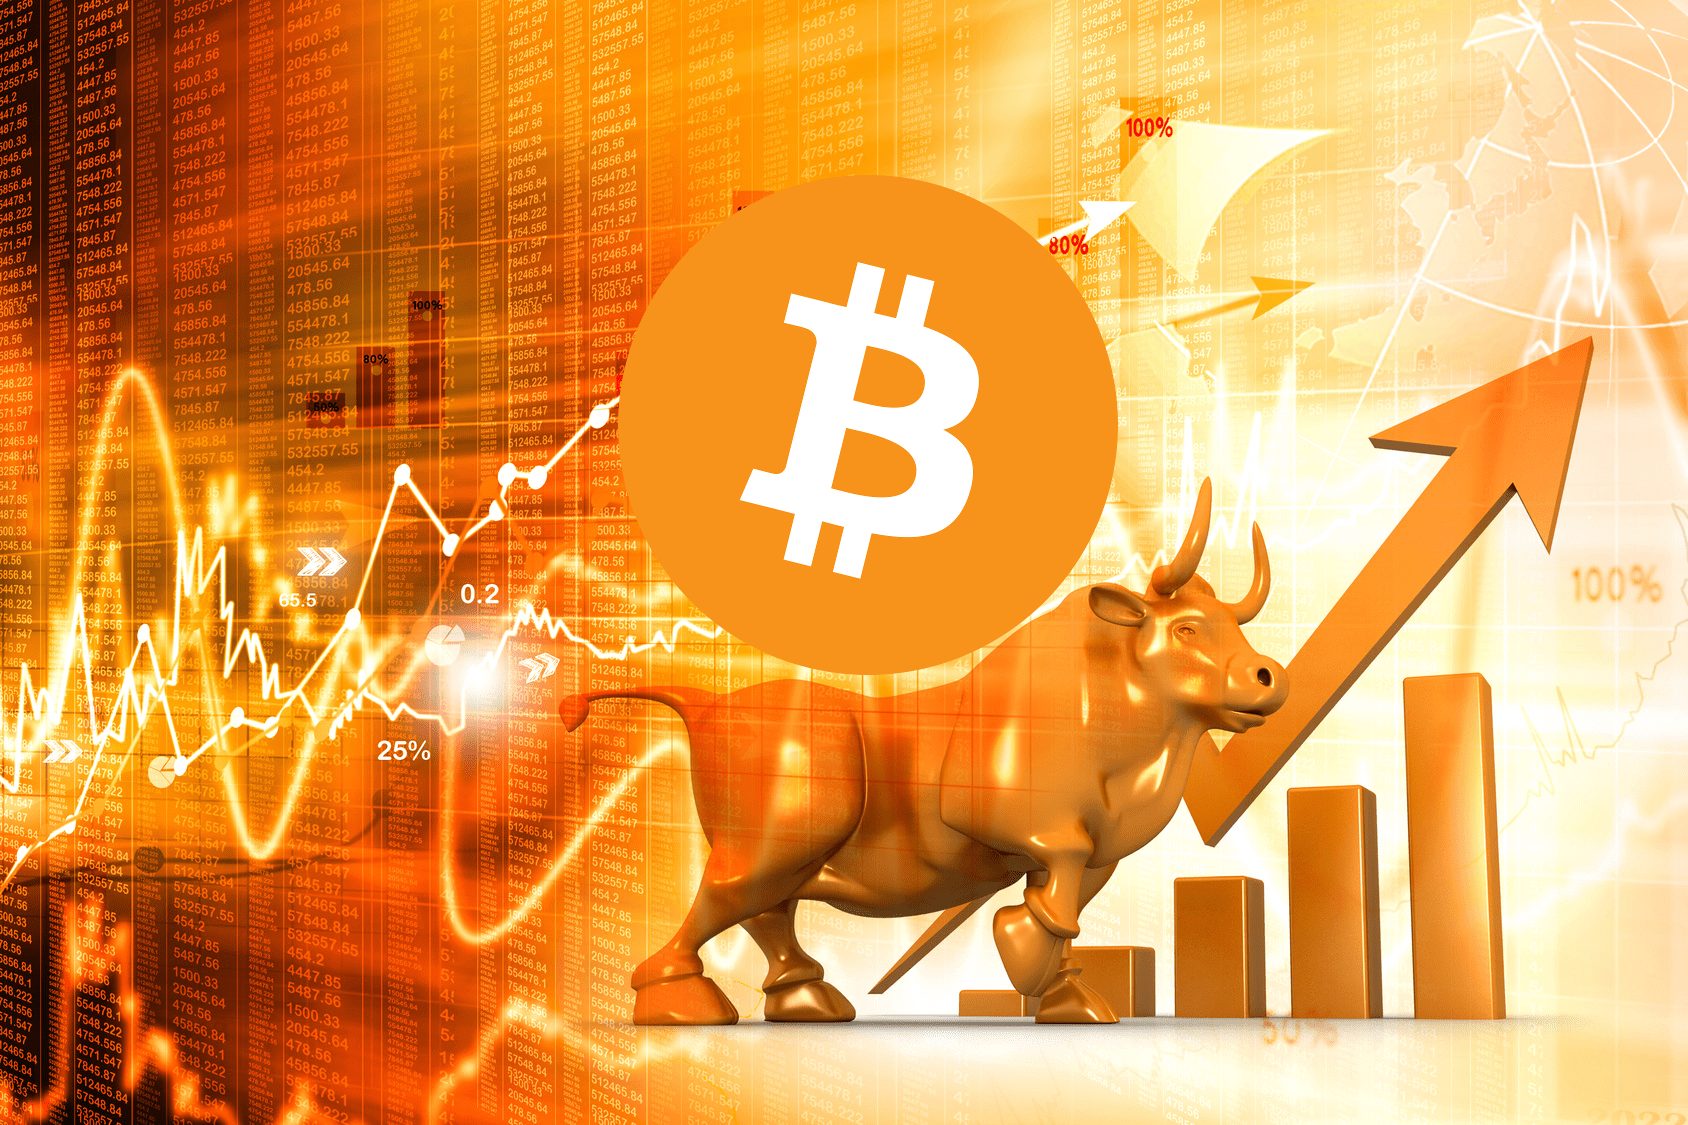 Bull vs. Bear Crypto Market: All You Need To Know